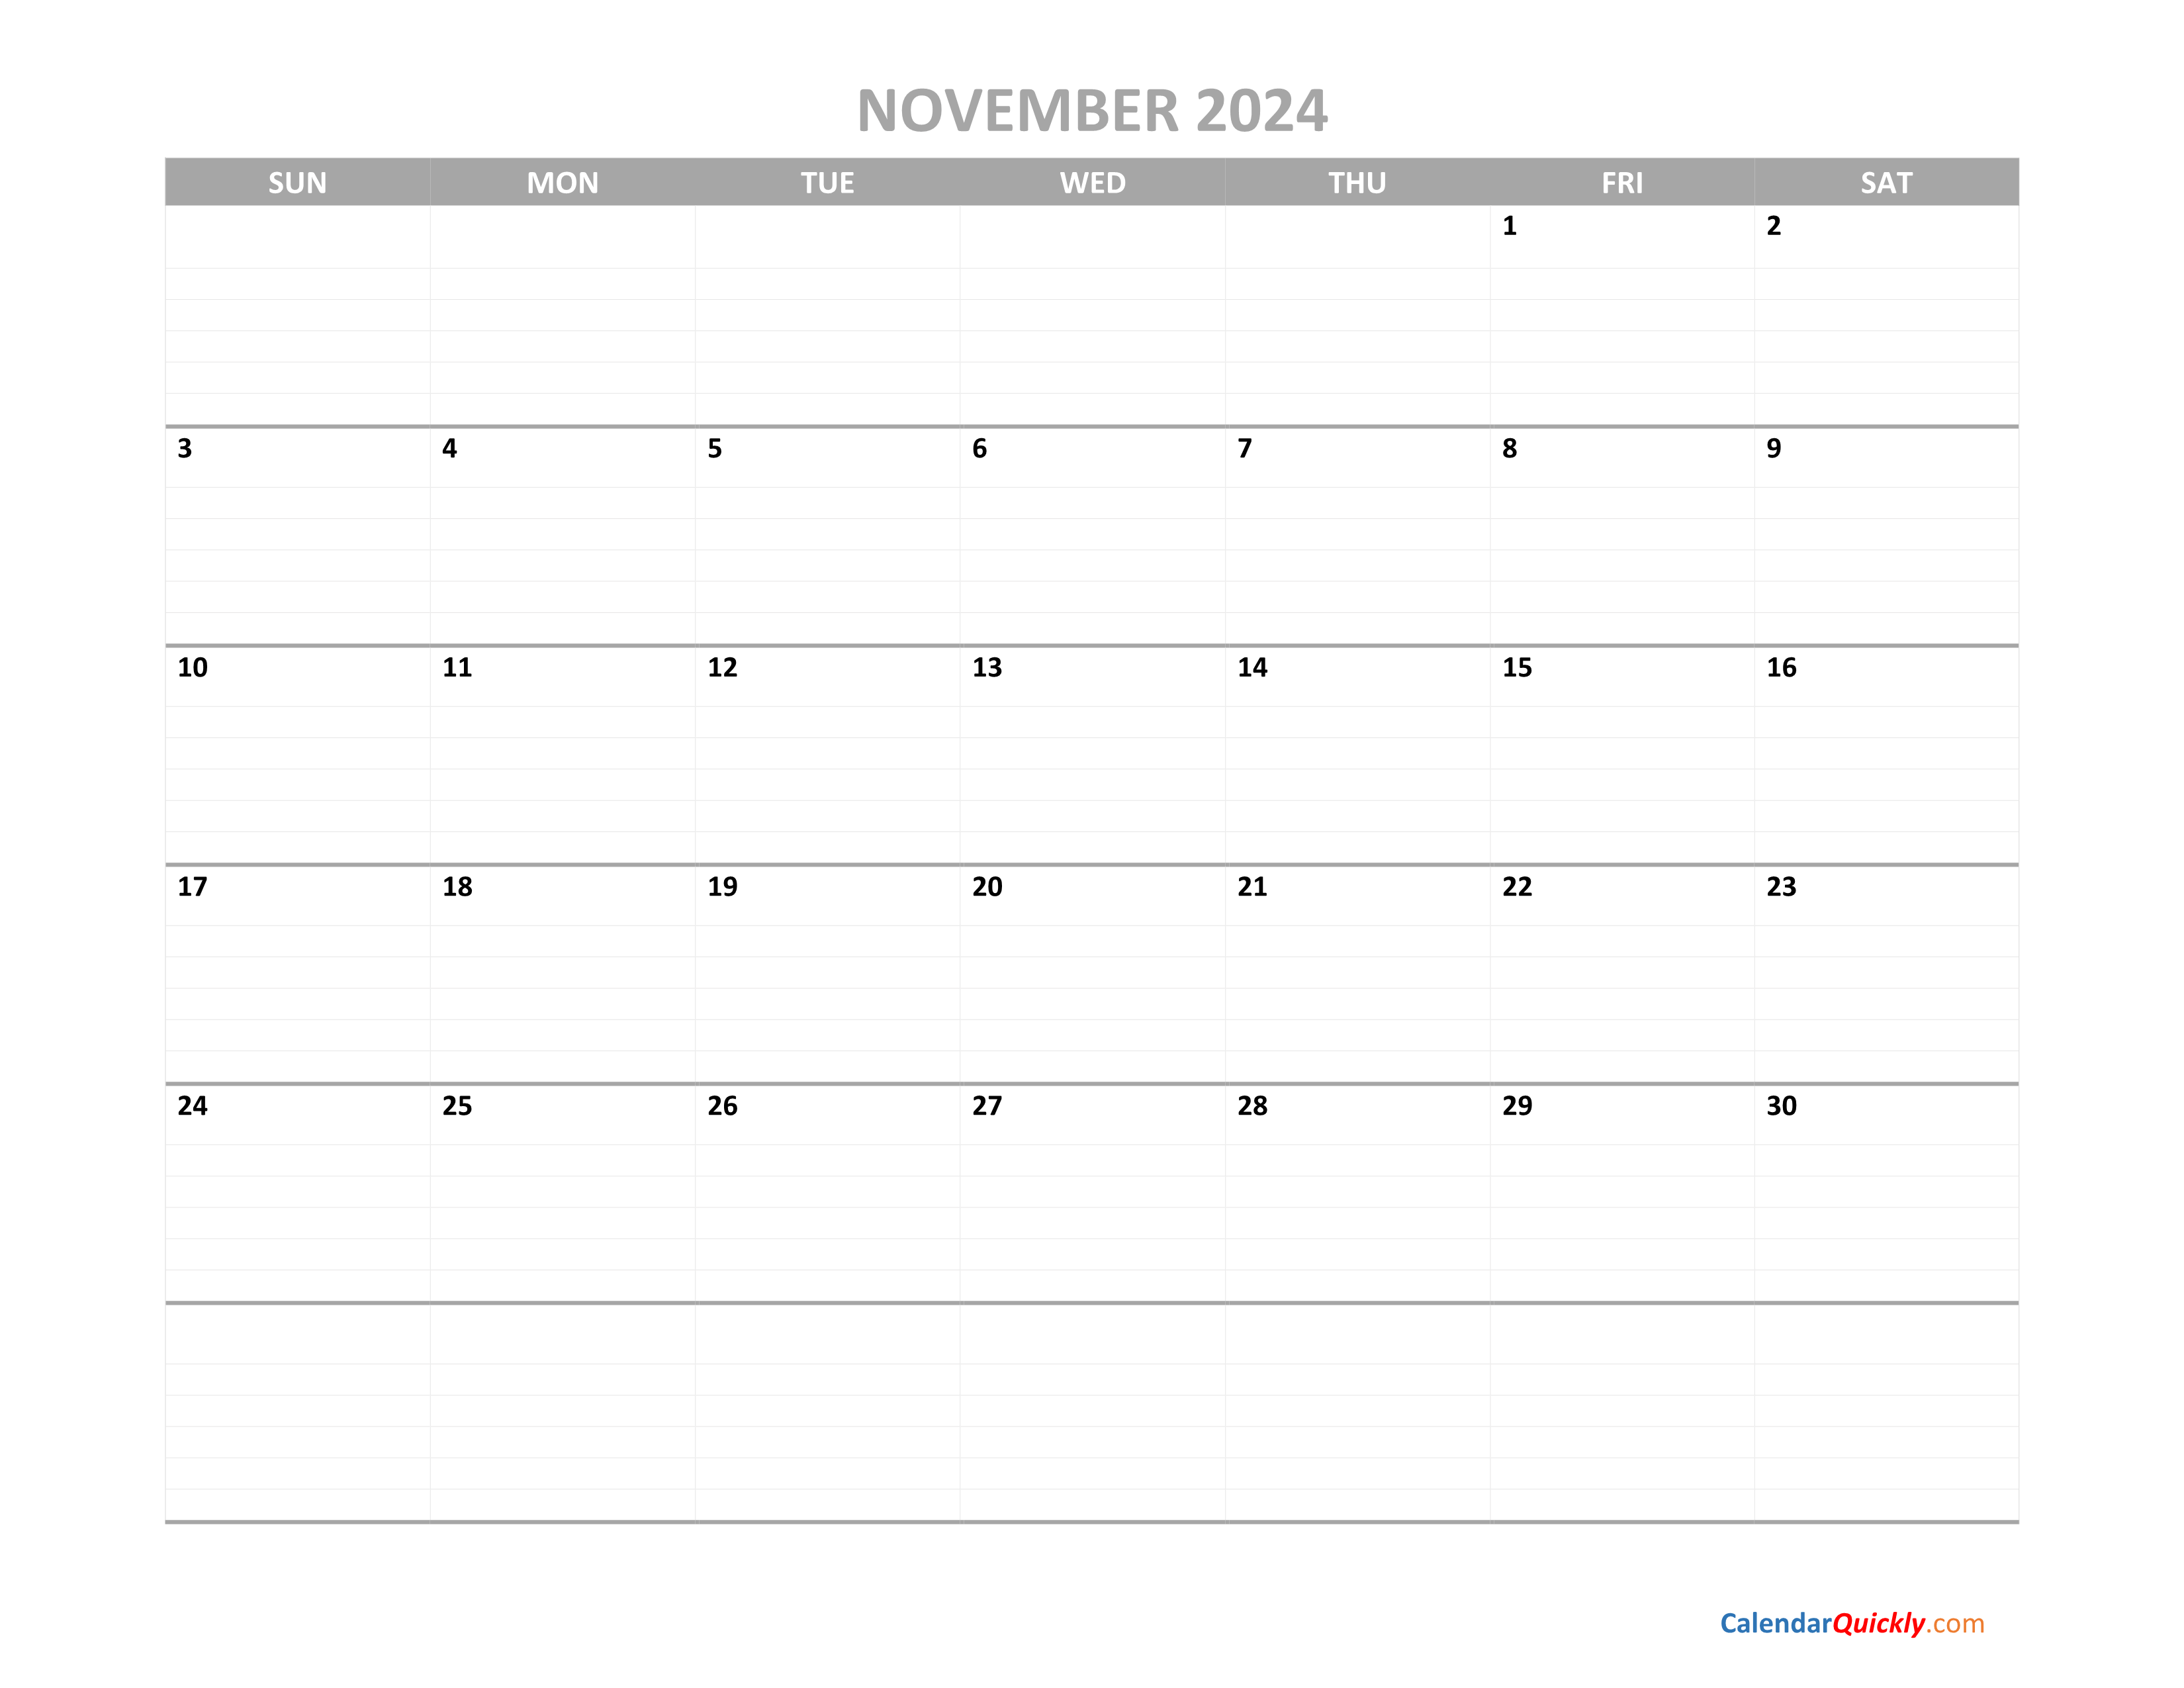 November Calendar 2024 Printable Calendar Quickly - Free Printable 2024 November Calendar Templates